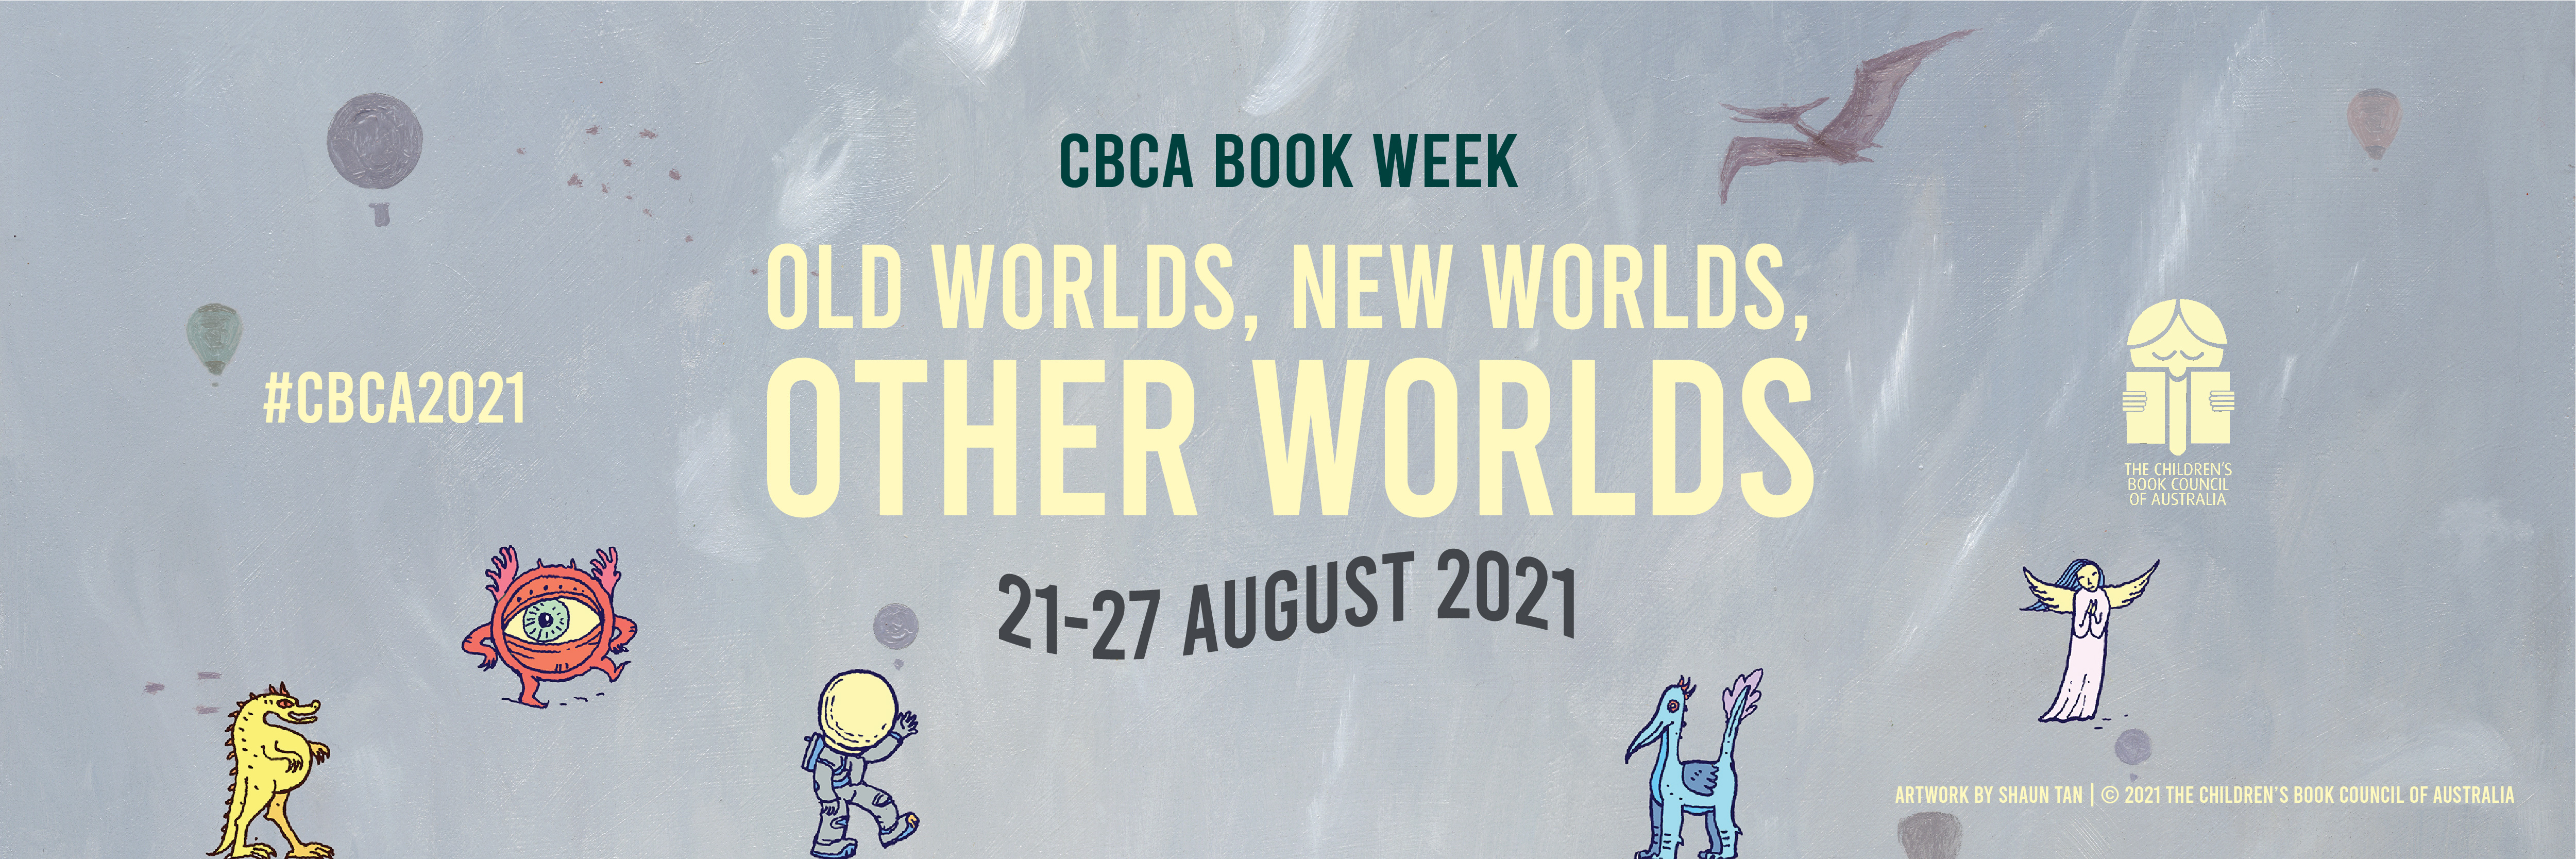 Book Week 21-27 August 2021